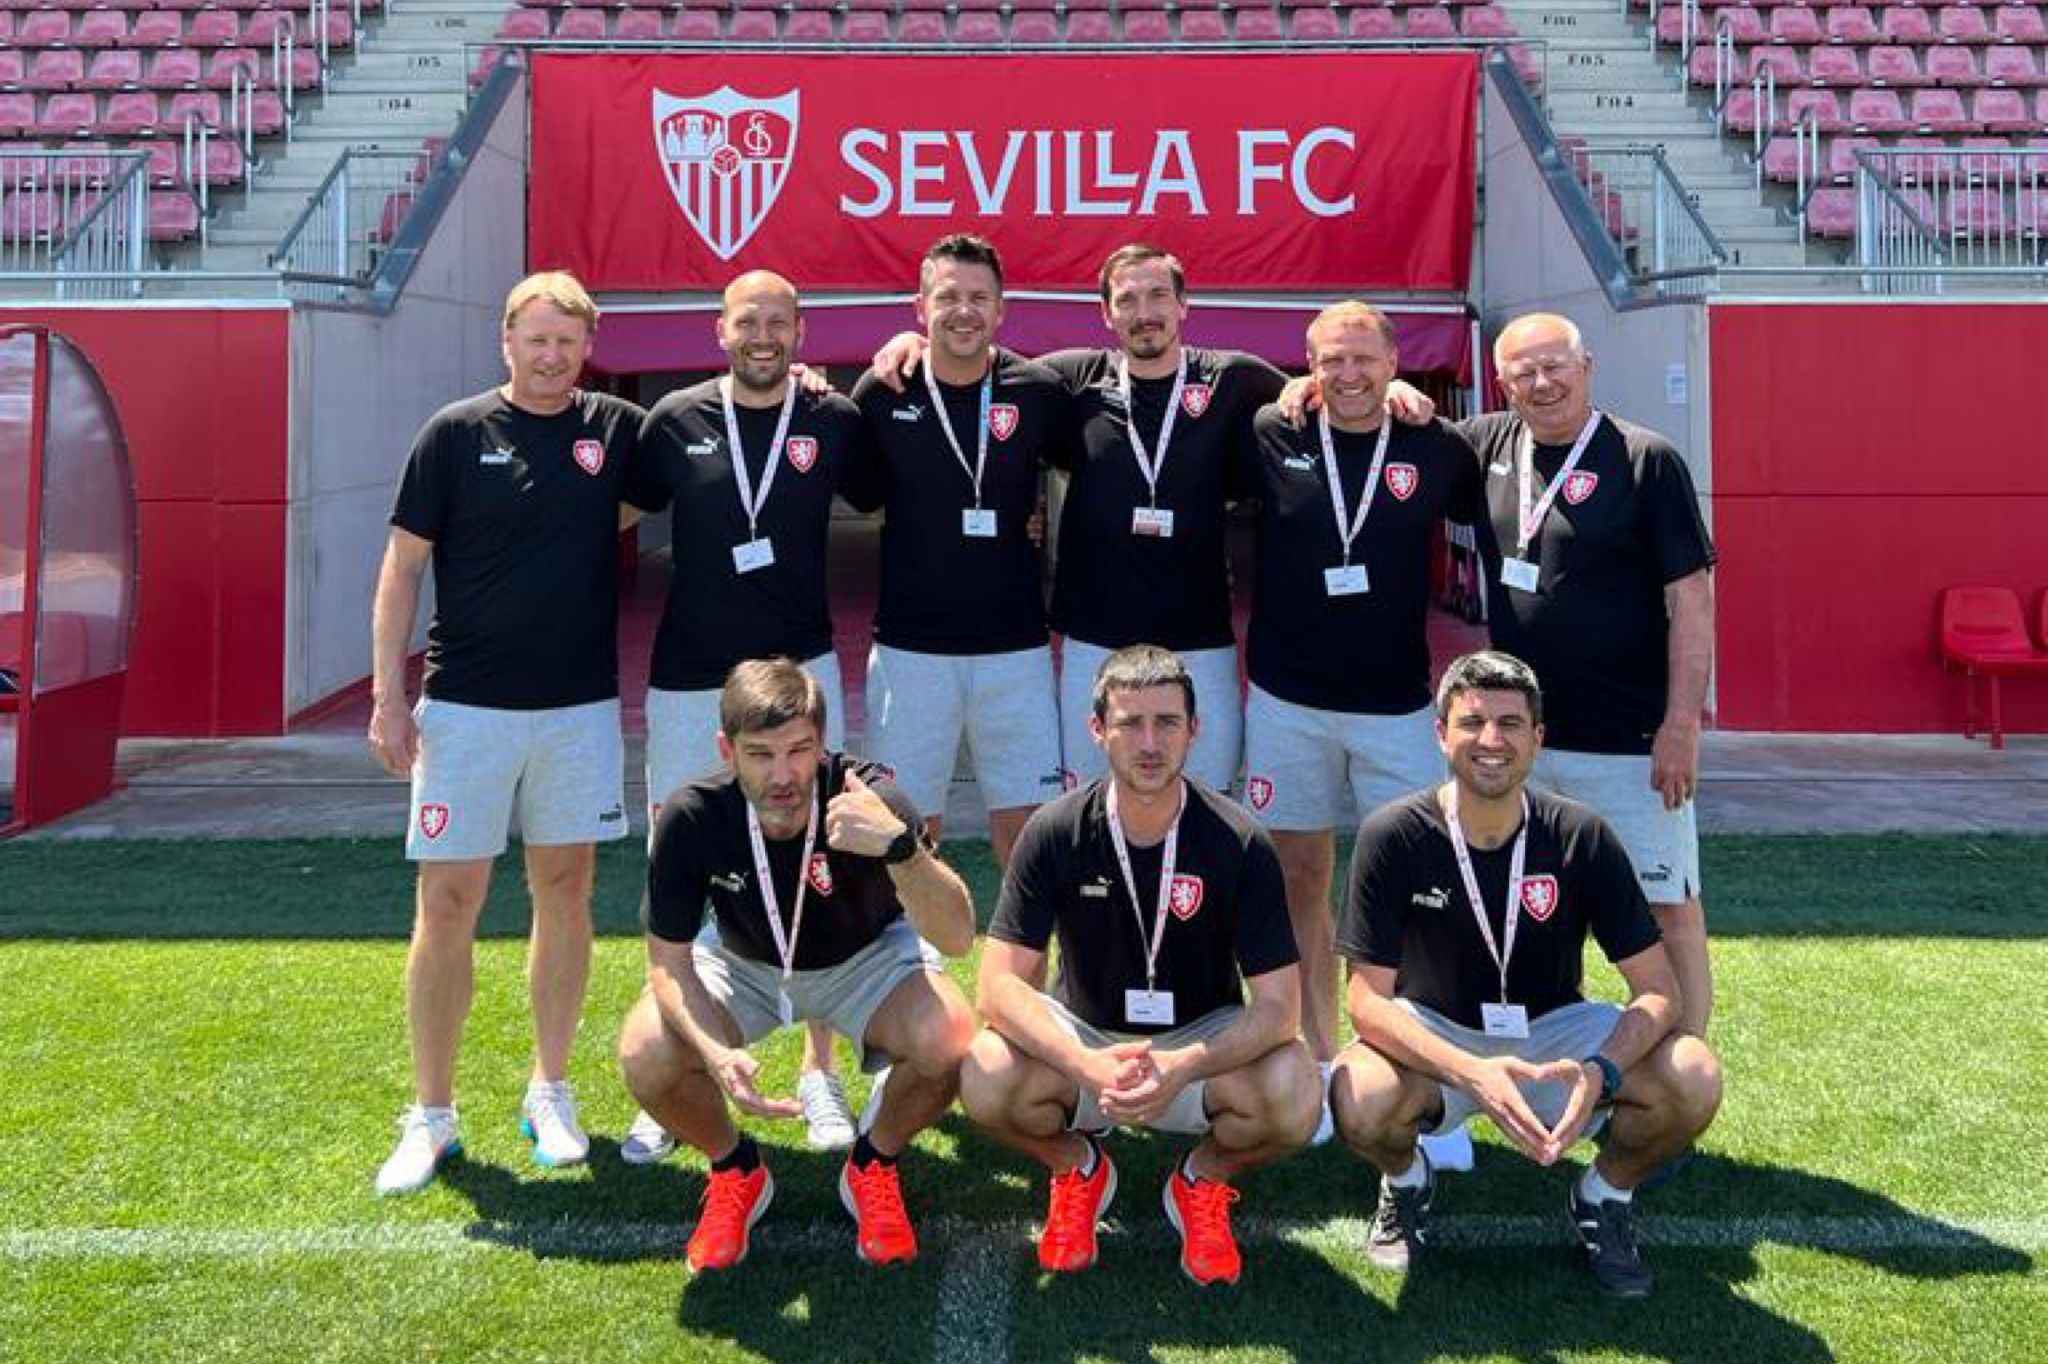 Técnicos de la Federación Checa de Fútbol conocieron los procesos de trabajo de la Cantera del Sevilla FC